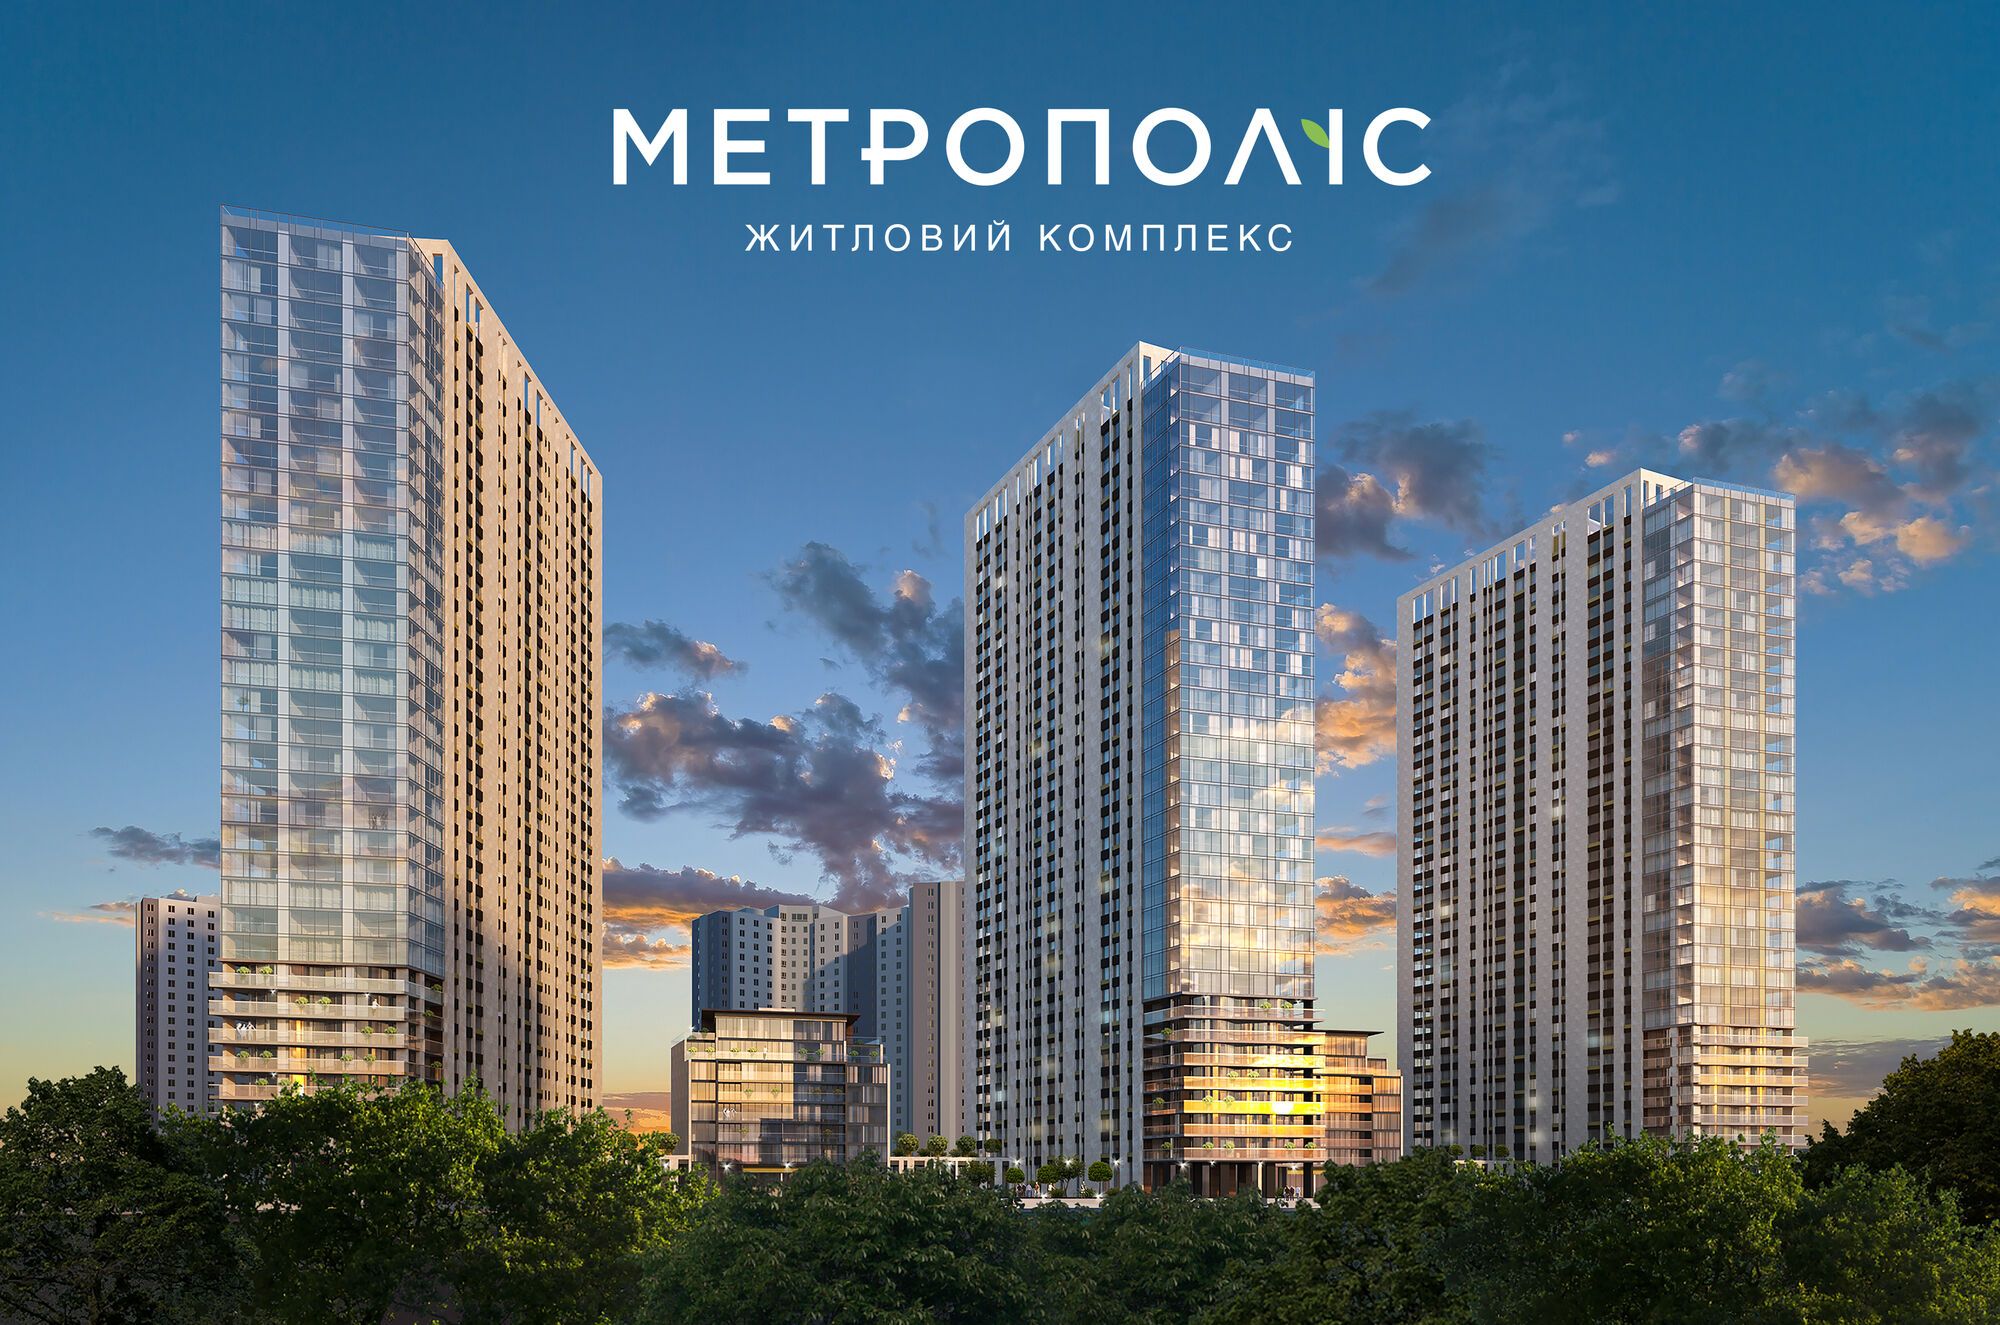 Группа компаний DIM презентовала свой самый масштабный проект – ЖК "Метрополис"